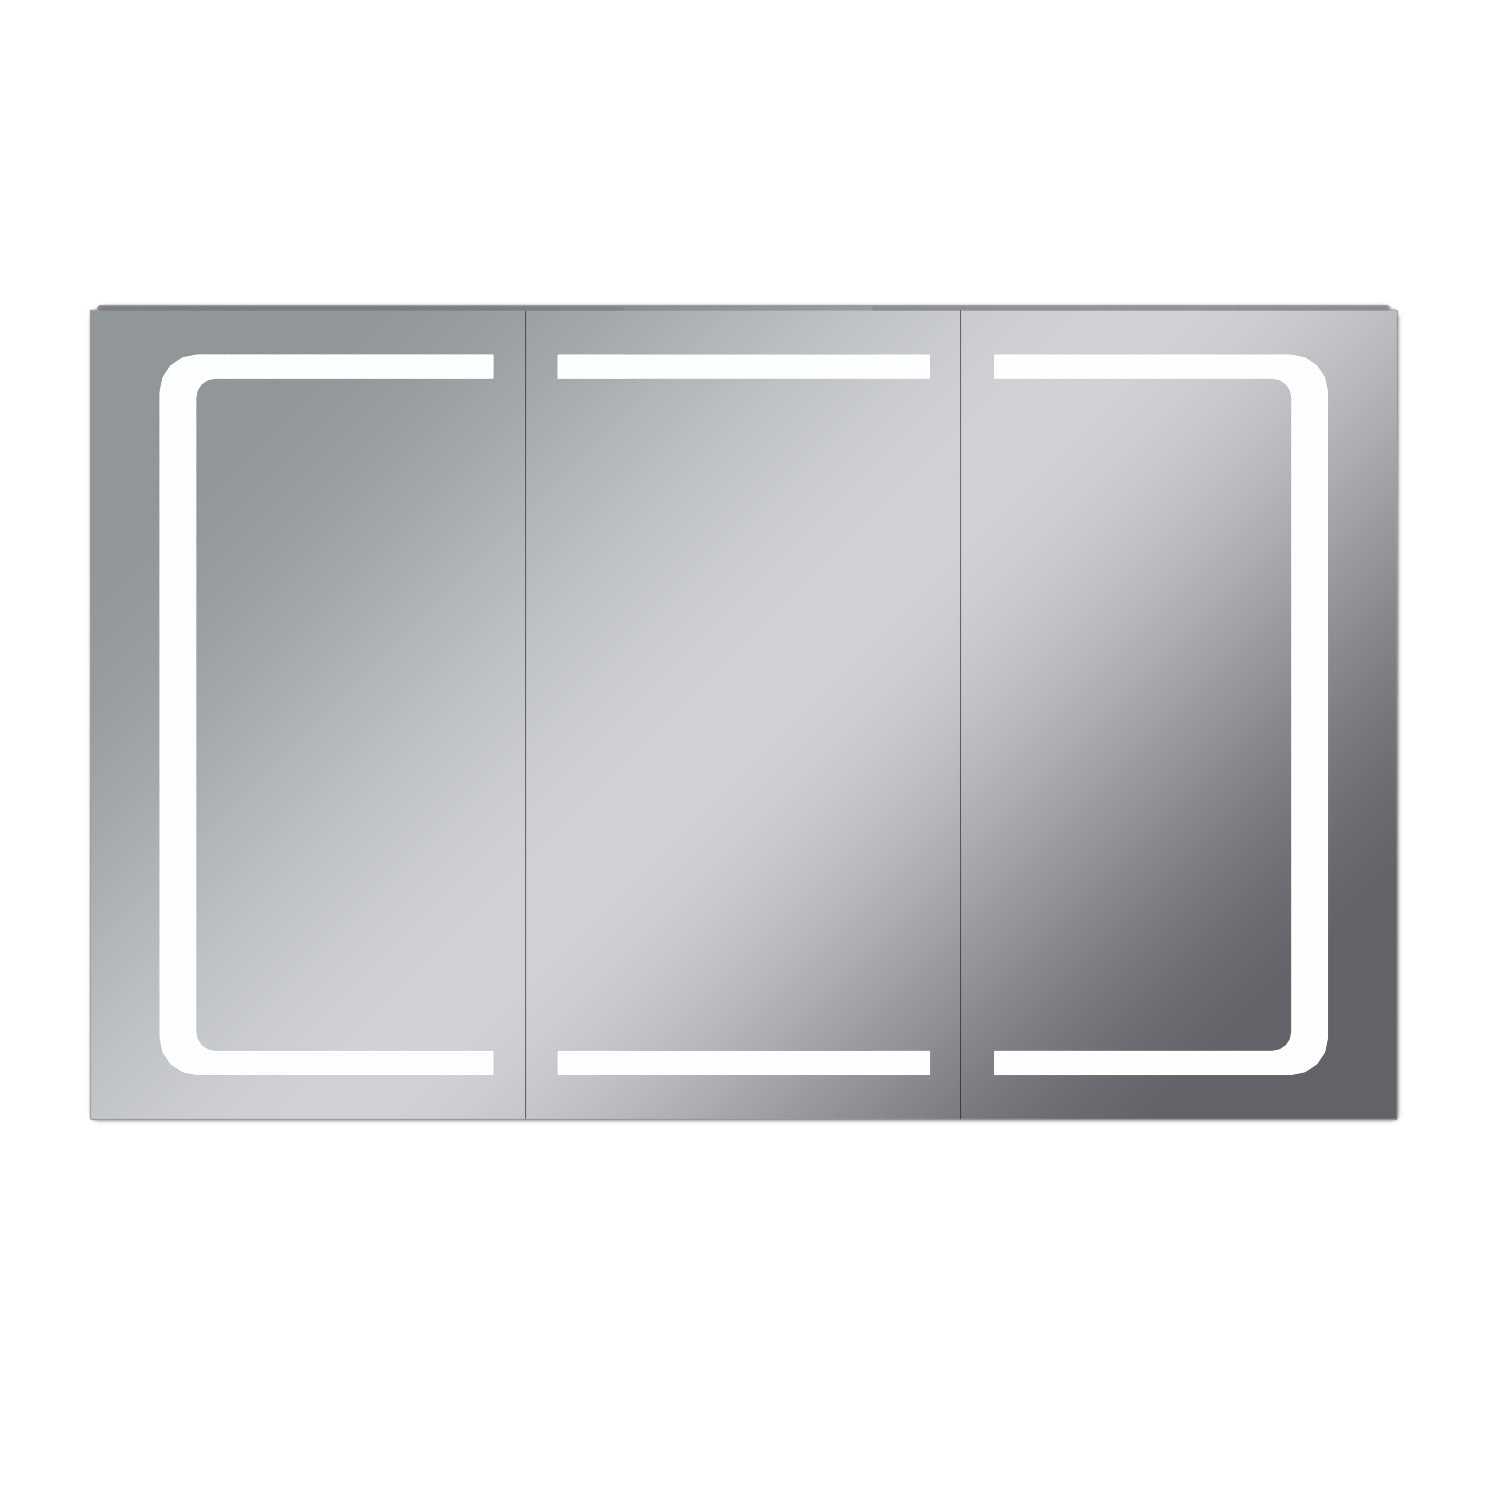 Badezimmer LED Spiegelschrank mit Beleuchtung 3-türig Kippschalter 105 x 65 x 13cm